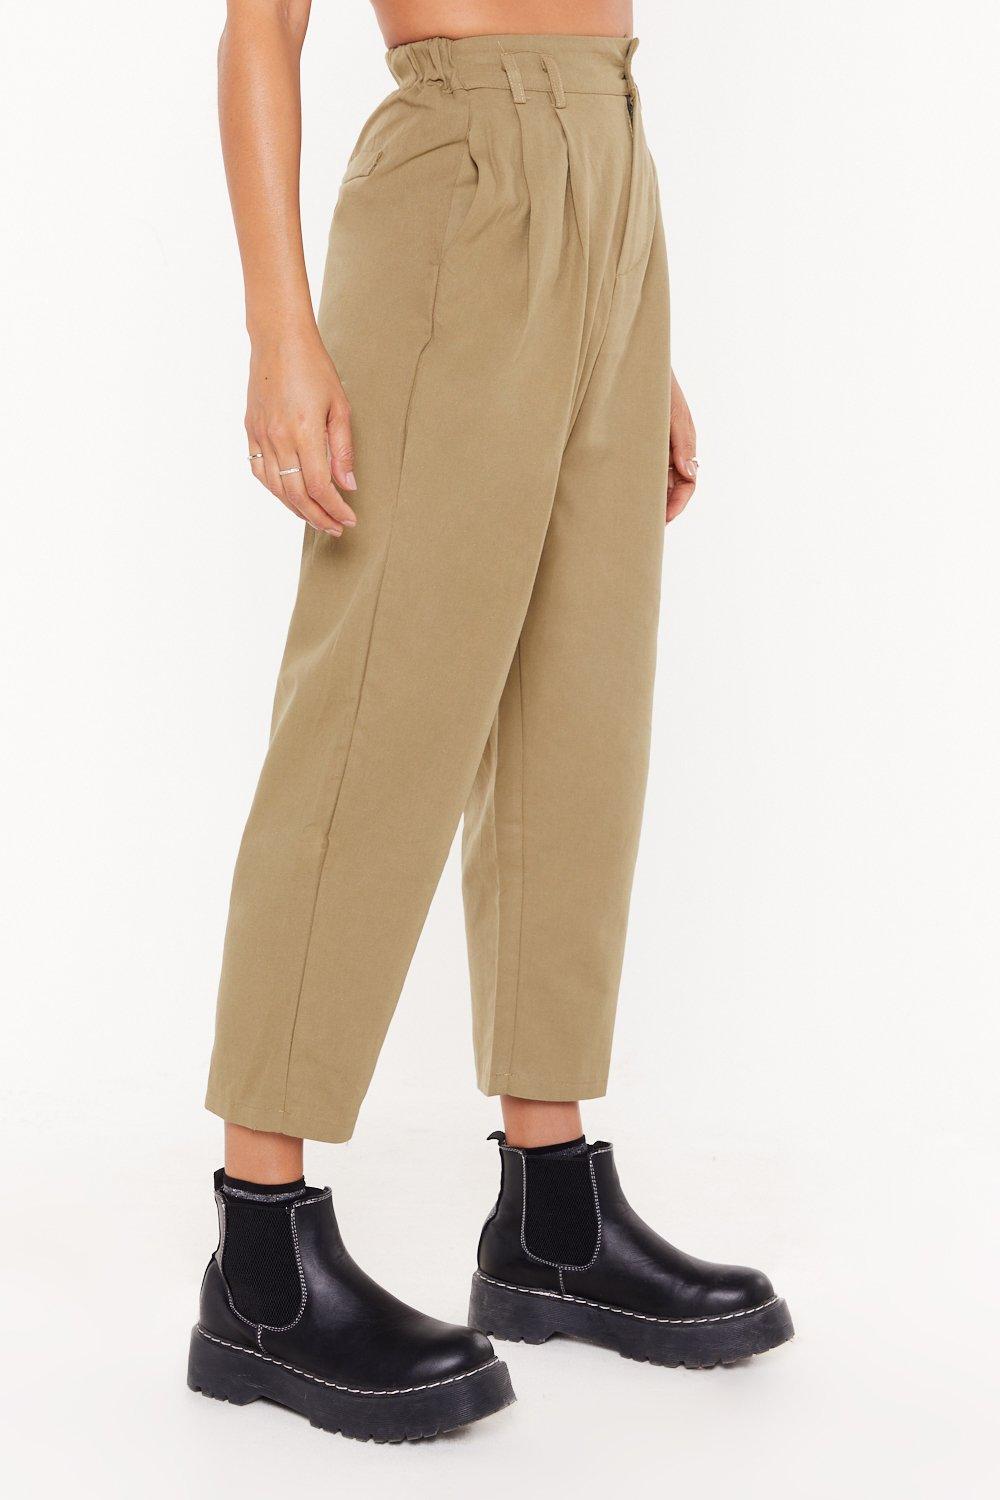 high waisted khaki pants womens